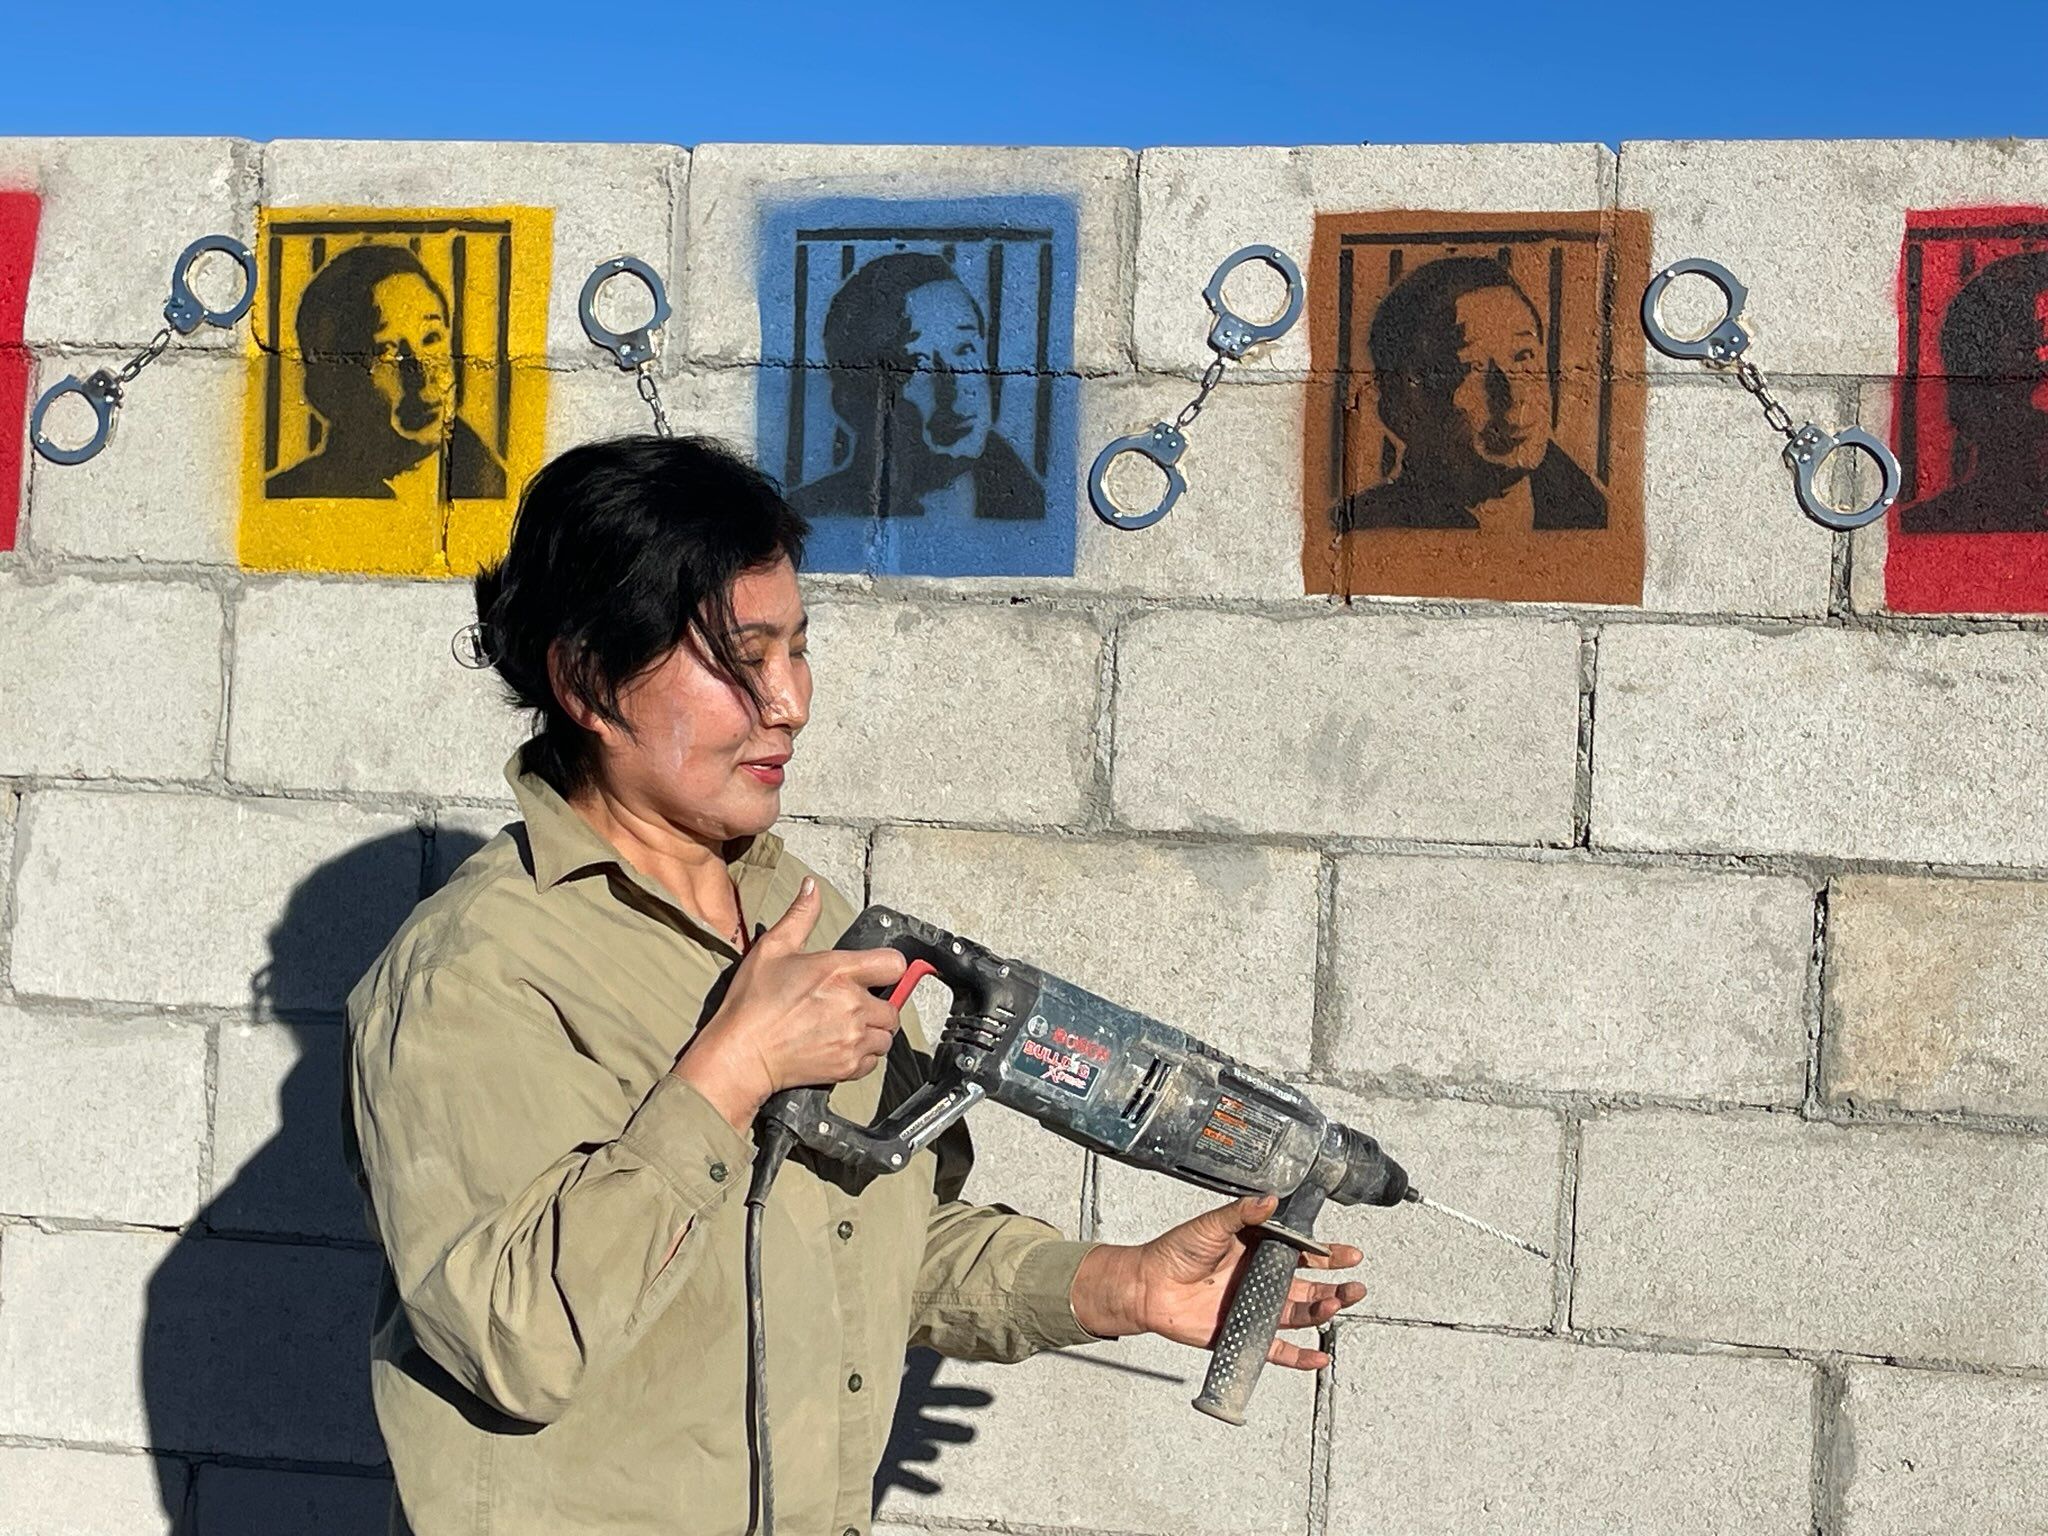 Hôm 09/11, bà Cảnh Hòa đã khắc chân dung của ông Cao Trí Thịnh lên đoạn đầu của Bức tường Lennon ở Công viên Điêu khắc Tự do tại Nam California. (Ảnh do bà Cảnh Hòa cung cấp)